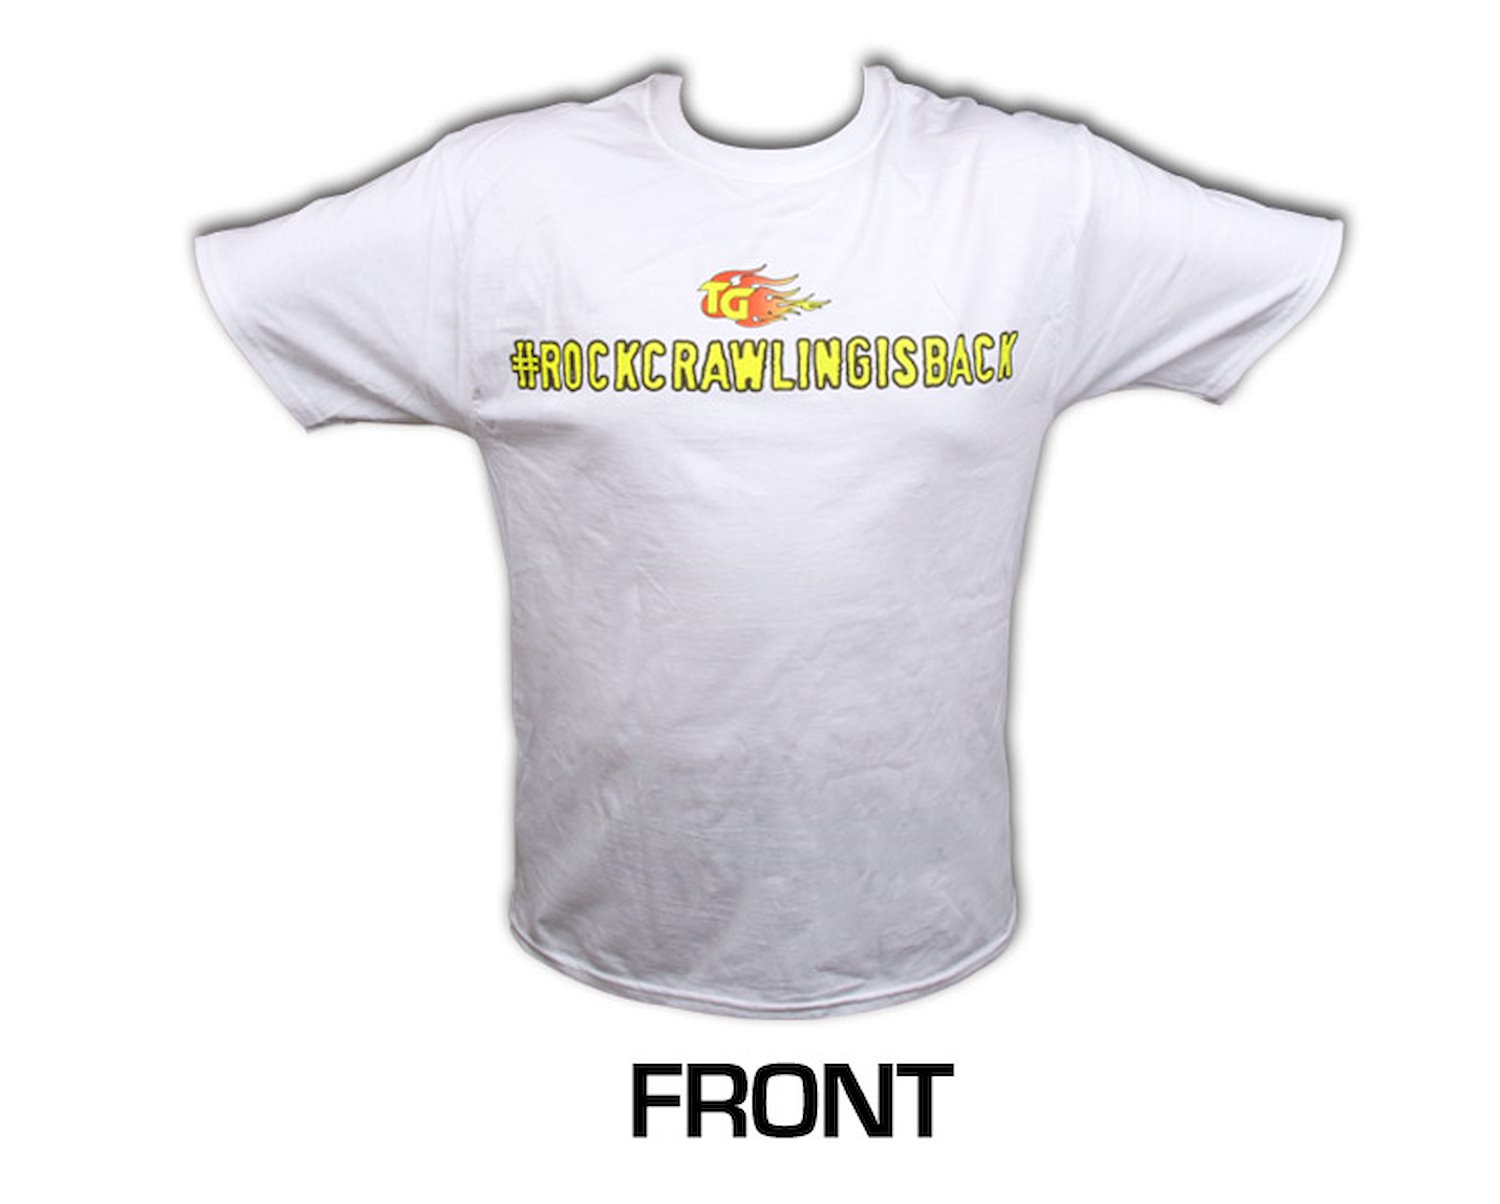 Short Sleeved White Shirt #rockcrawlingisback Medium